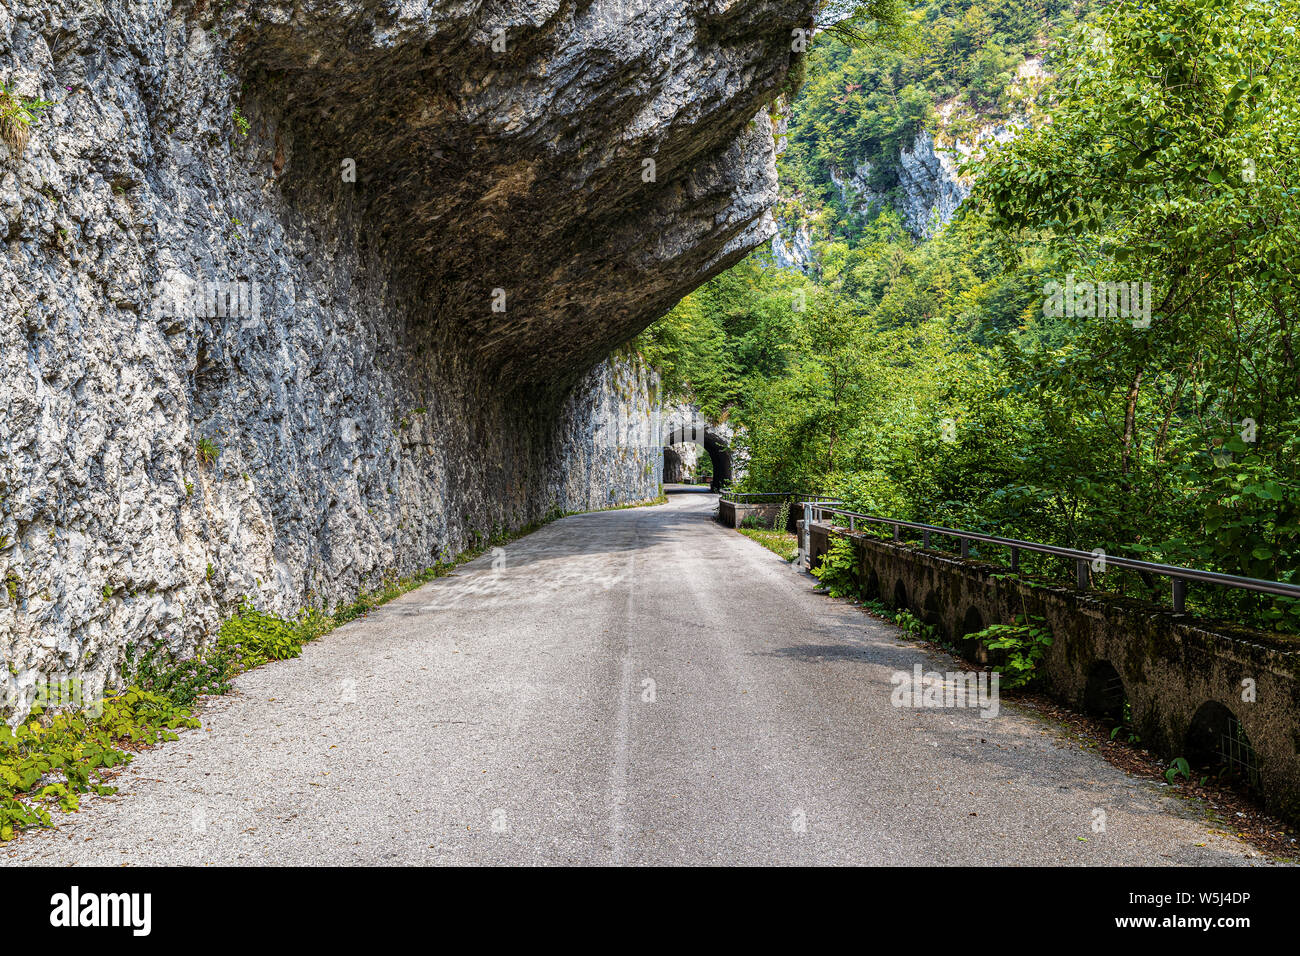 Italia Friuli Val Cellina Barcis - camino viejo de la Valcellina - Parque Natural de la Dolomiti Friulane Foto de stock